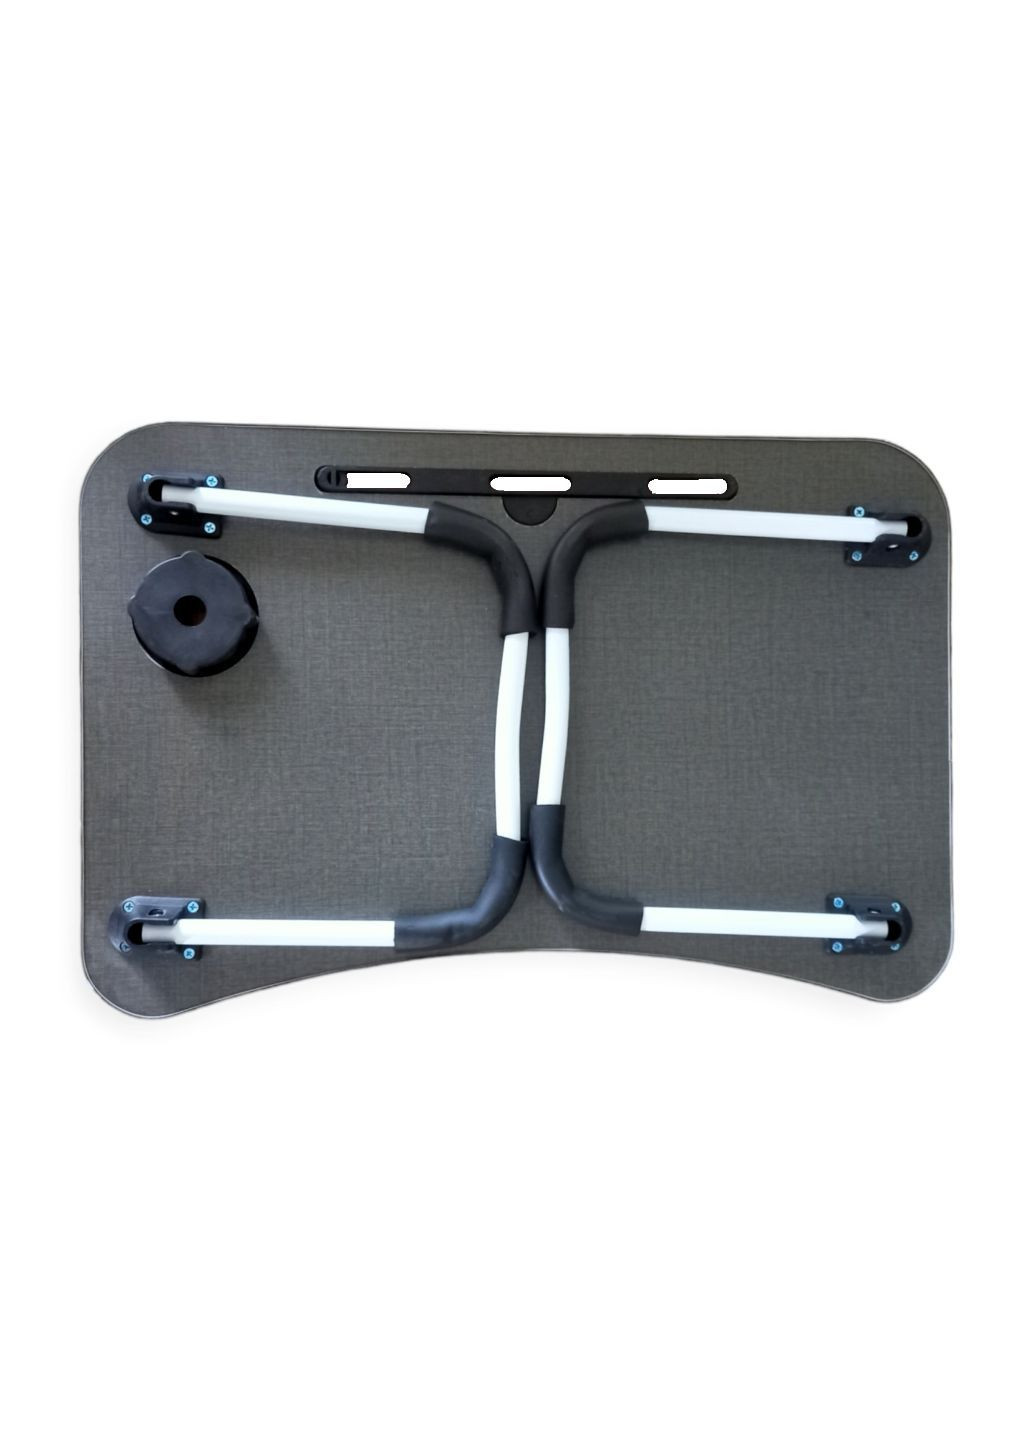 Столик для ноутбука, планшета завтраков складной переносной стол в кровать с подставкой под стакан деревянный No Brand (290704738)